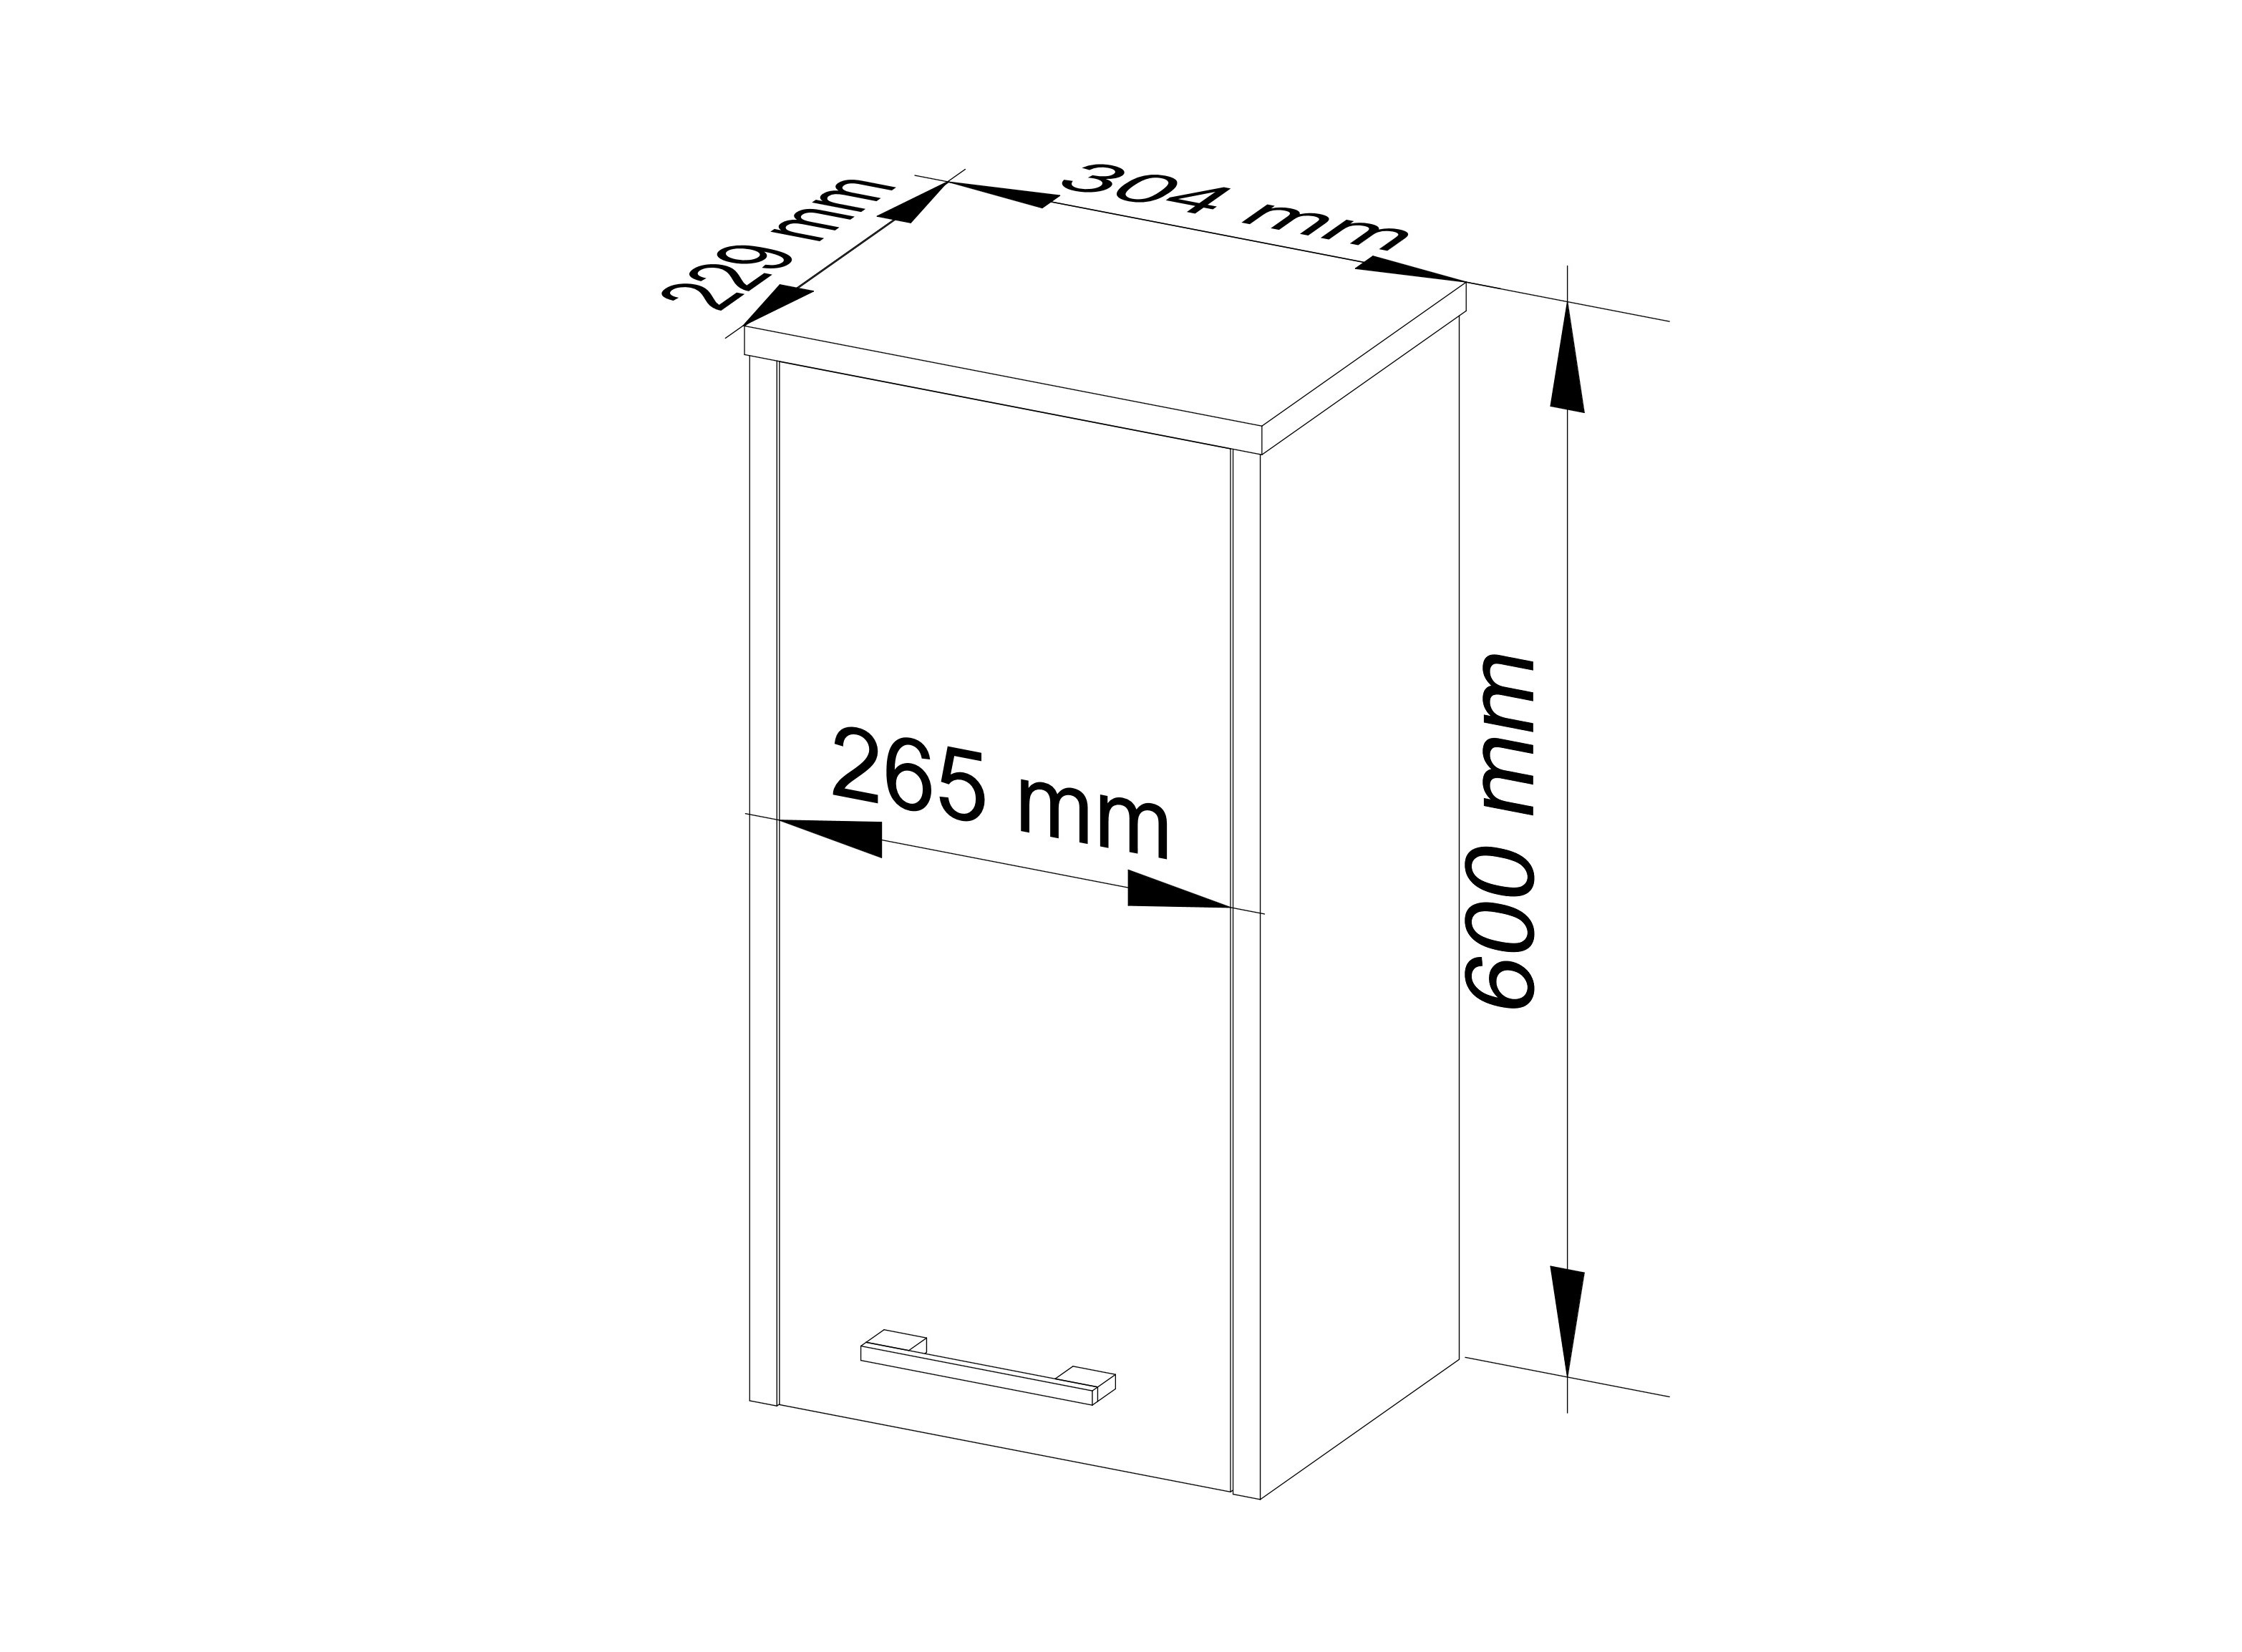 Meble AKORD - Szafka łazienkowa FIN Wenge 30 cm 1 drzwi kolor Wenge mat 2 półki 30x22,5x60 cm - Wymiary toaletki AKORD - 5907504389790